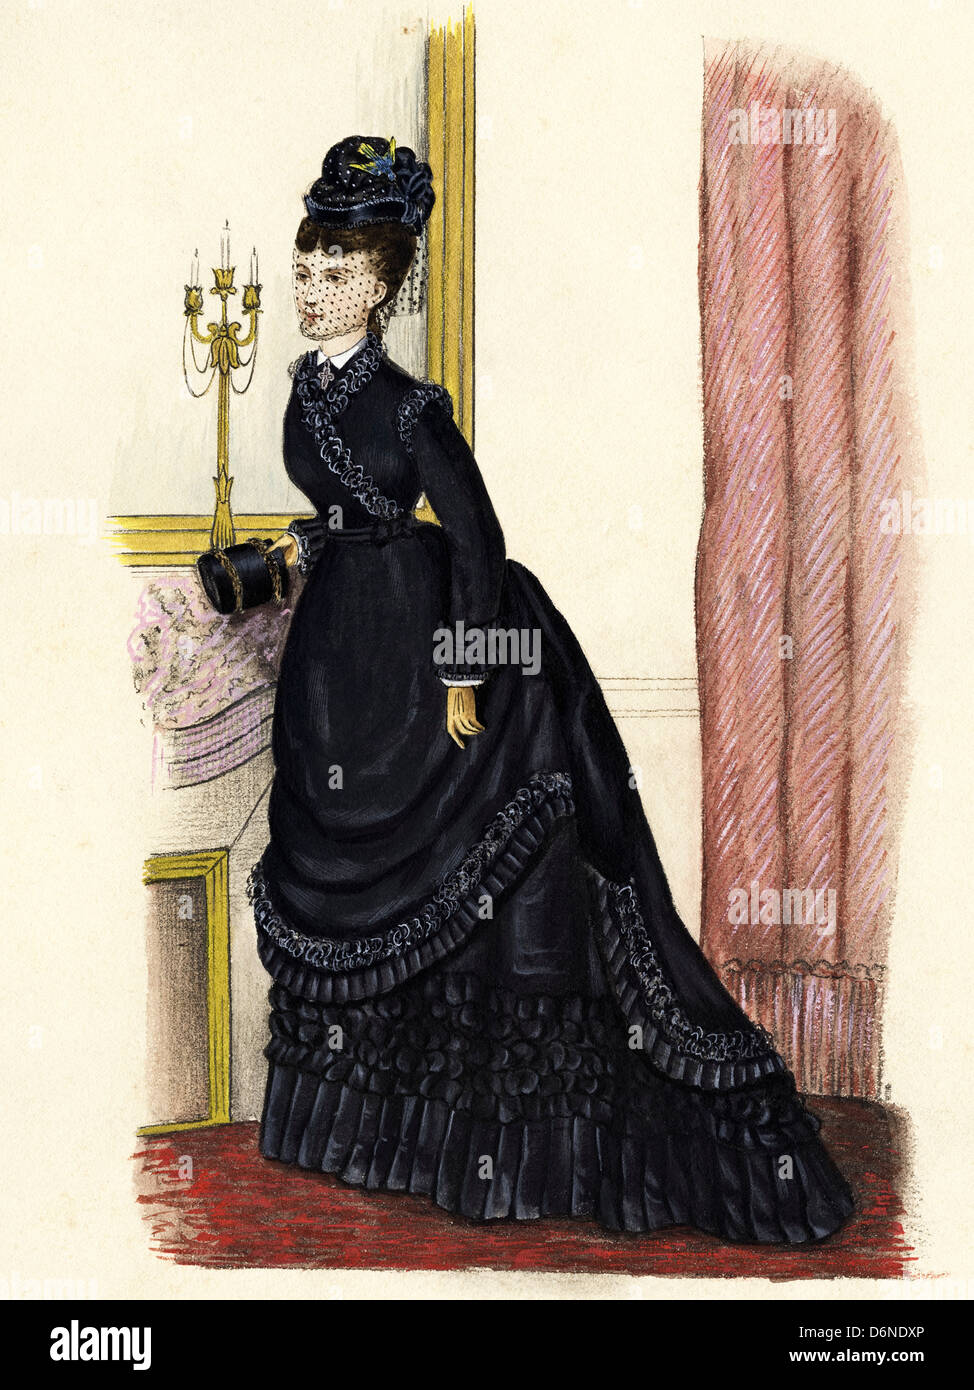 Moda francese dall'era vittoriana datata 1874. Acquerello originale pittura artista sconosciuto Foto Stock